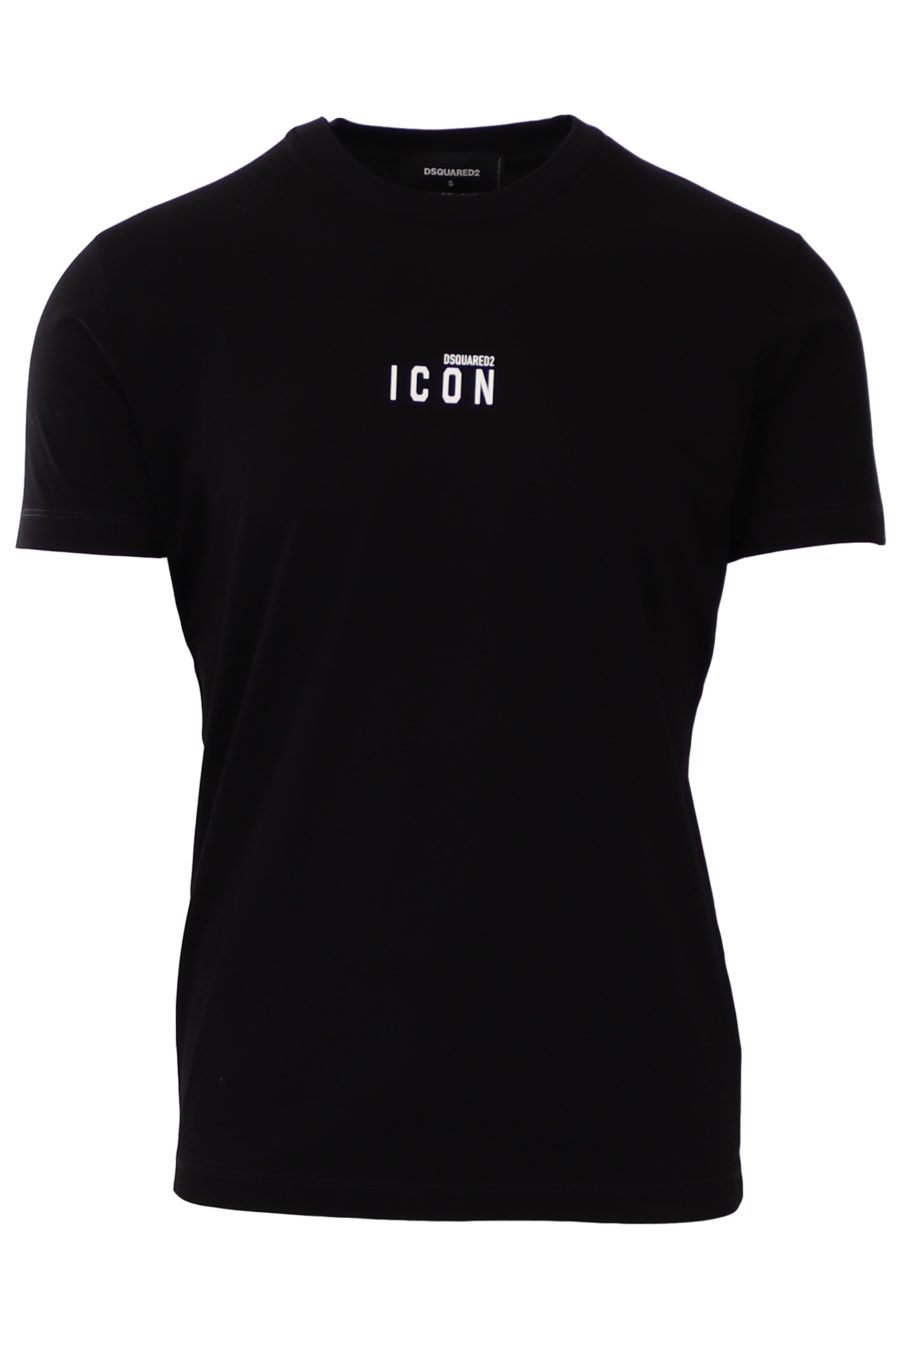 T-shirt Dsquared2 schwarz mit weißem Symbol in der Mitte - f283758b96fd12297da3afff39e8cbefe4f4eba3